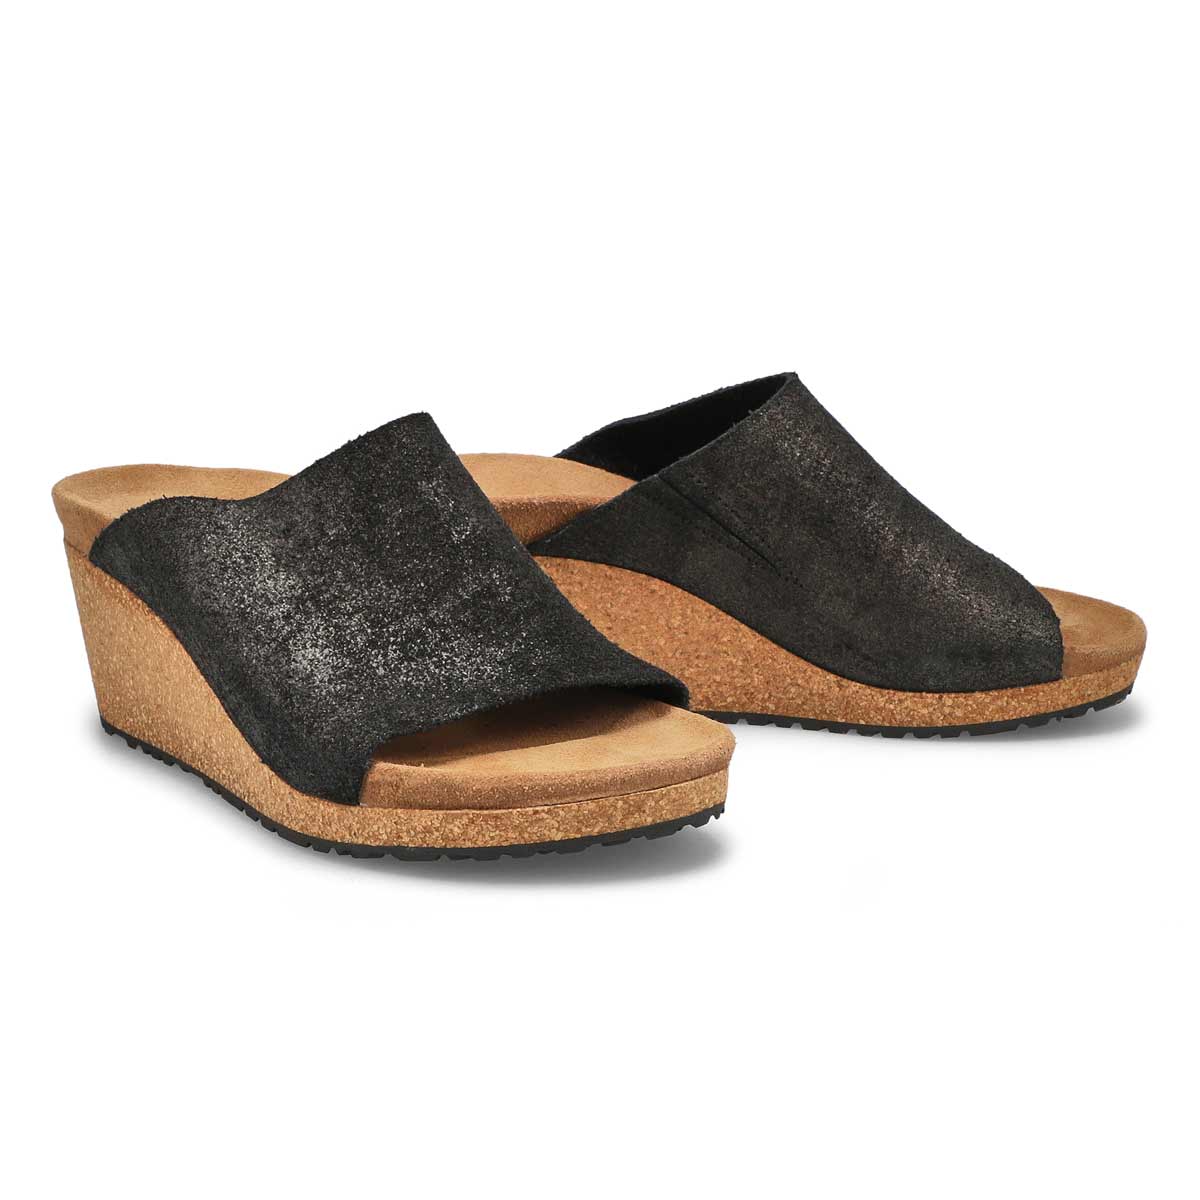 Sandales étroites NAMICA, noir antique mét.,femmes